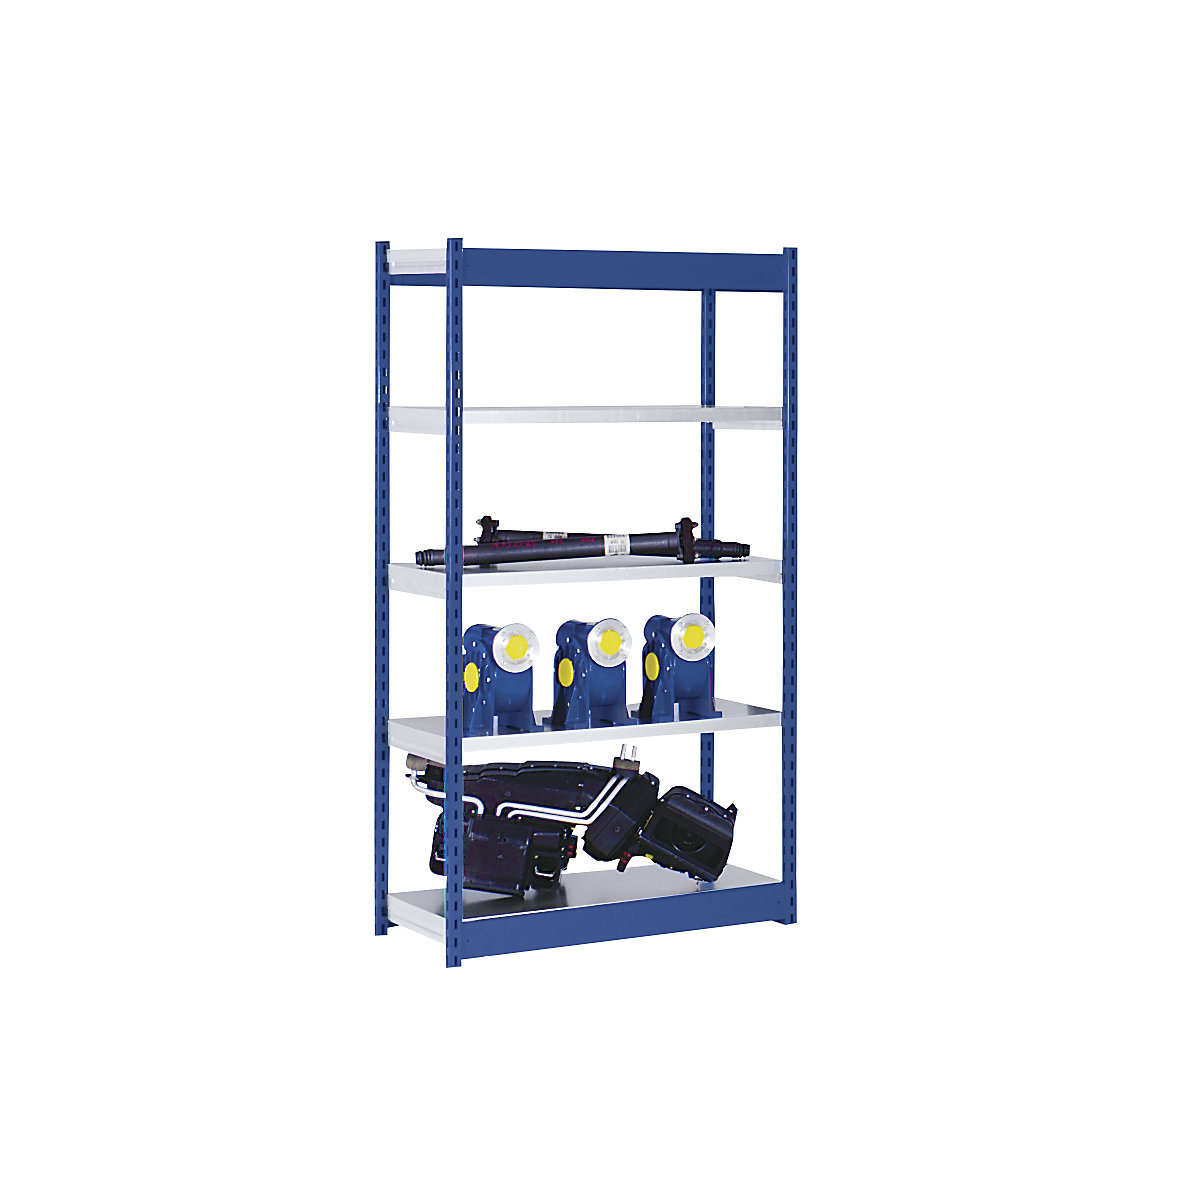 Stabilní zásuvný regál, jednostranný – hofe, výška regálu 2000 mm, modrý / pozinkovaný, šířka police 1025 mm, základní regál, šířka x hloubka 1025 x 400 mm-10